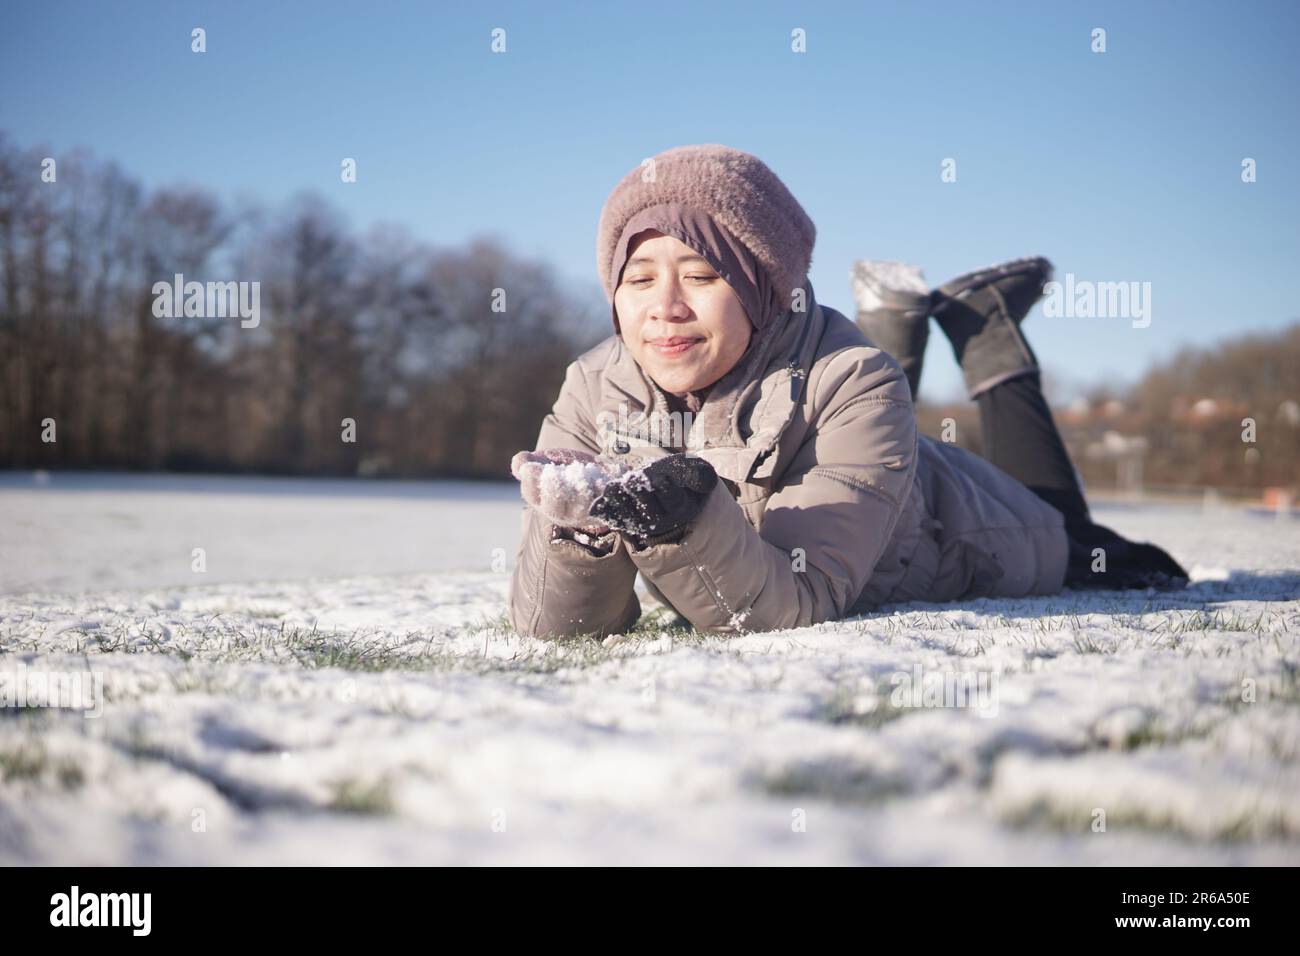 Eine weibliche Figur liegt im Schnee, ihr Arm ist ausgestreckt, und sie klammert sich an ein unbekanntes Objekt Stockfoto